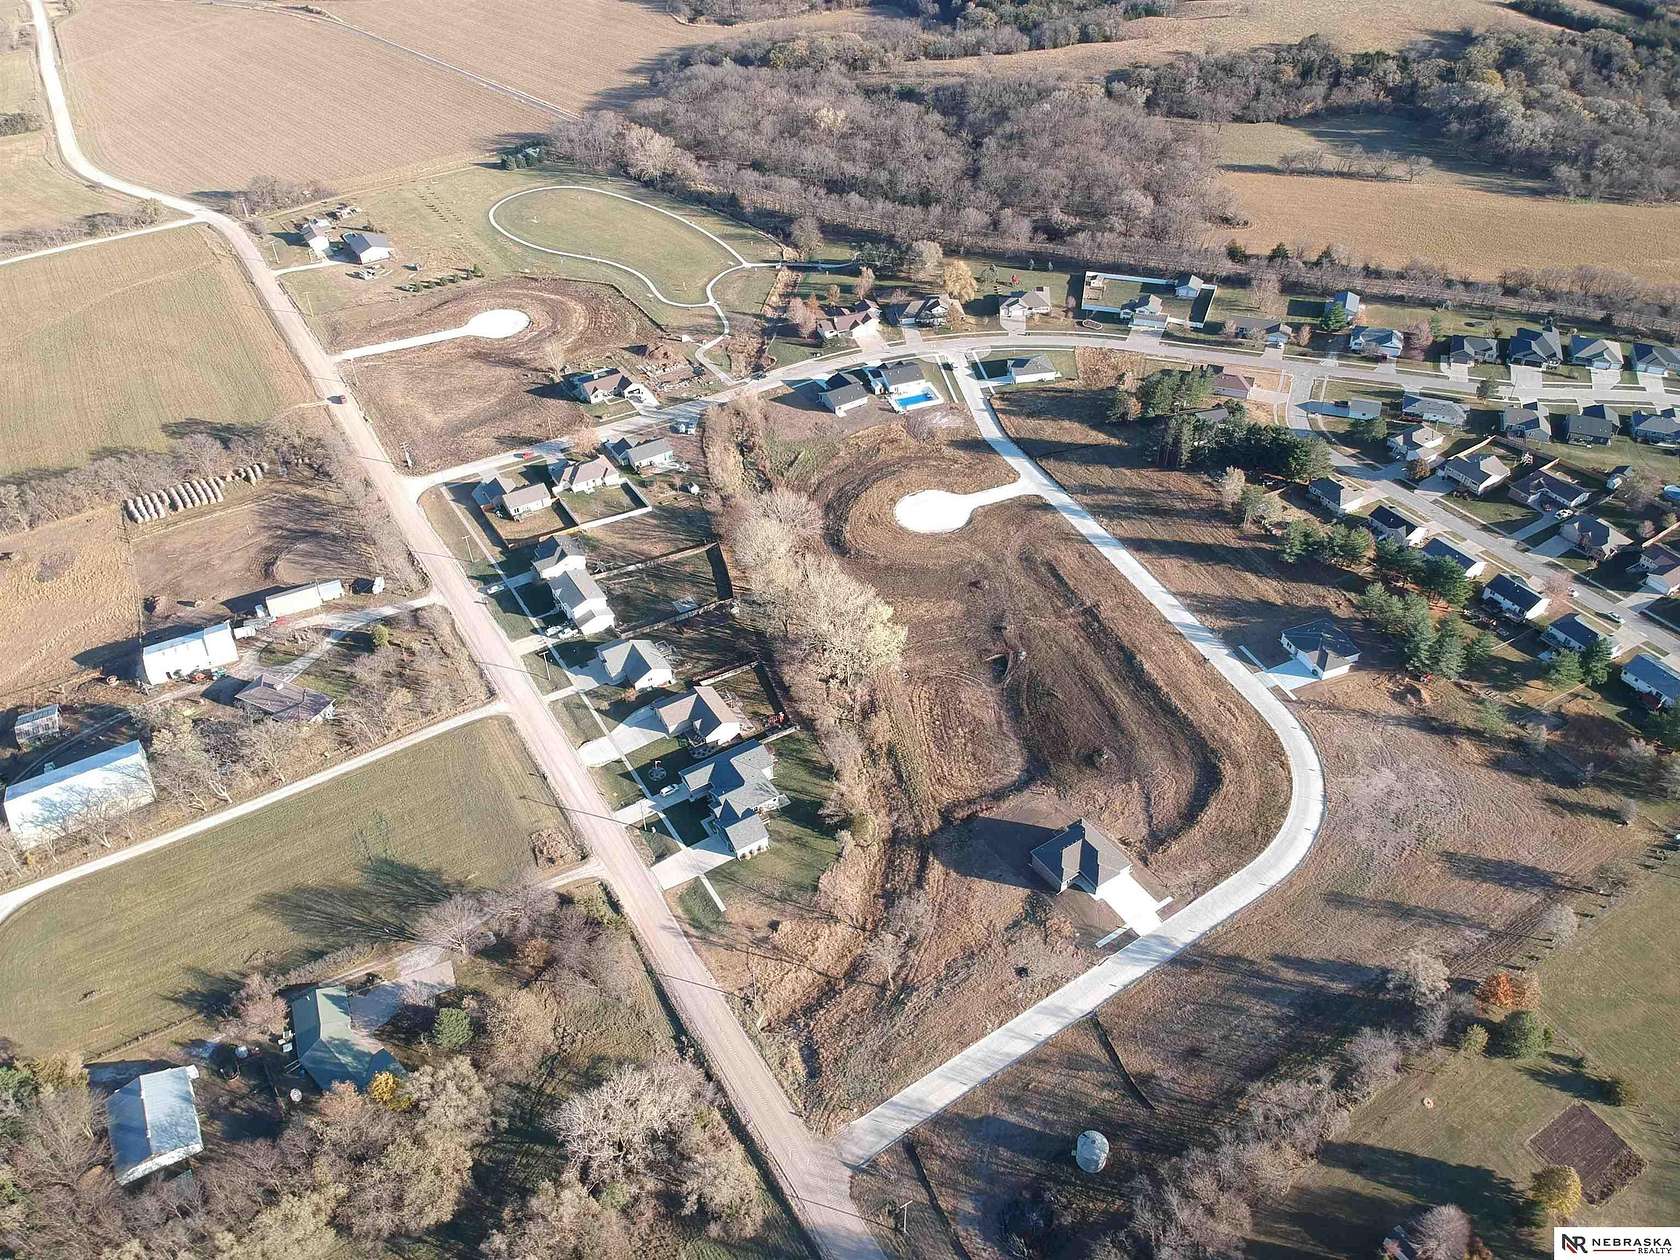 0.41 Acres of Residential Land for Sale in Bennet, Nebraska